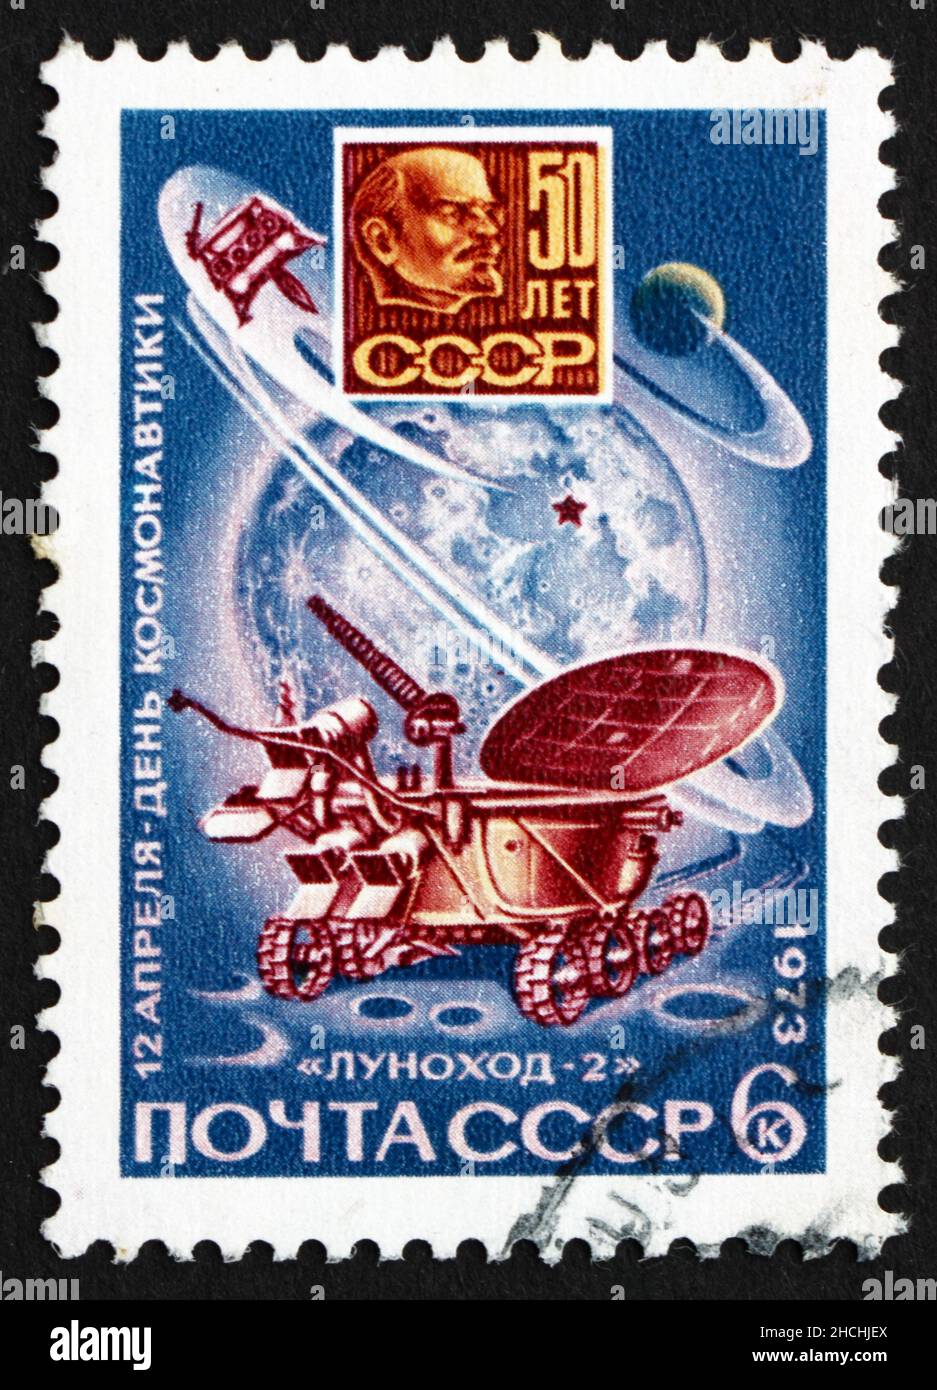 RUSSIE - VERS 1973: Un timbre imprimé en Russie montre Lunokhod 2 sur la Lune et Lénine Lune plaque, jour des cosmonautes, vers 1973 Banque D'Images